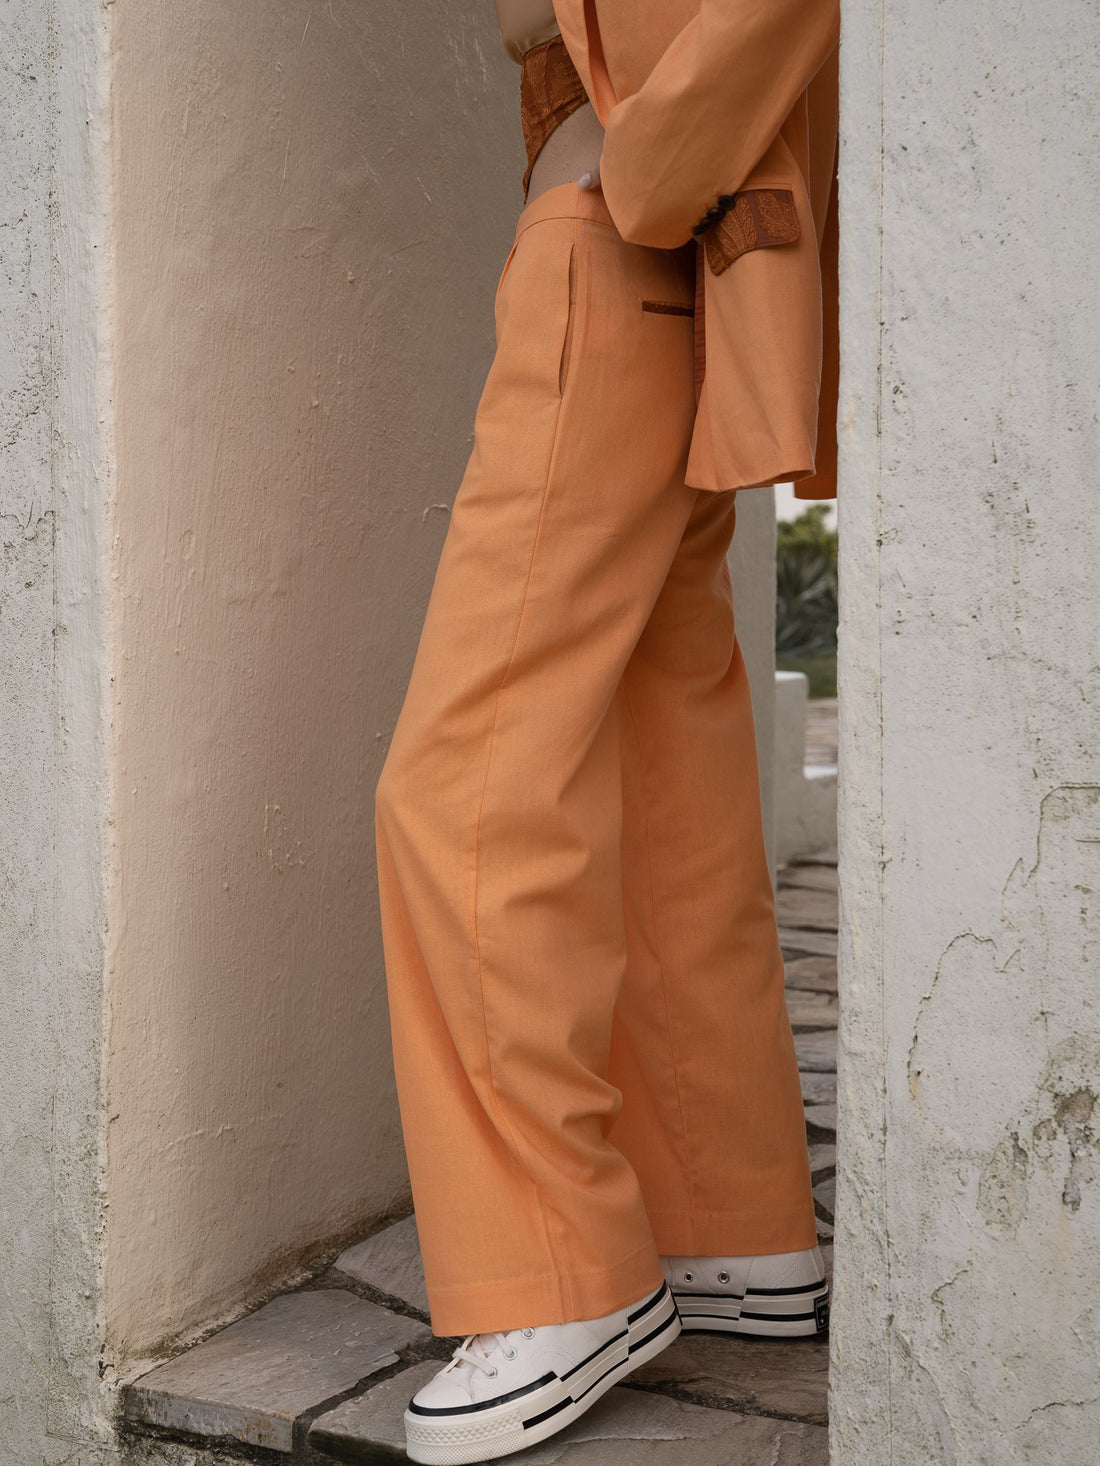 oriental linen straight pants